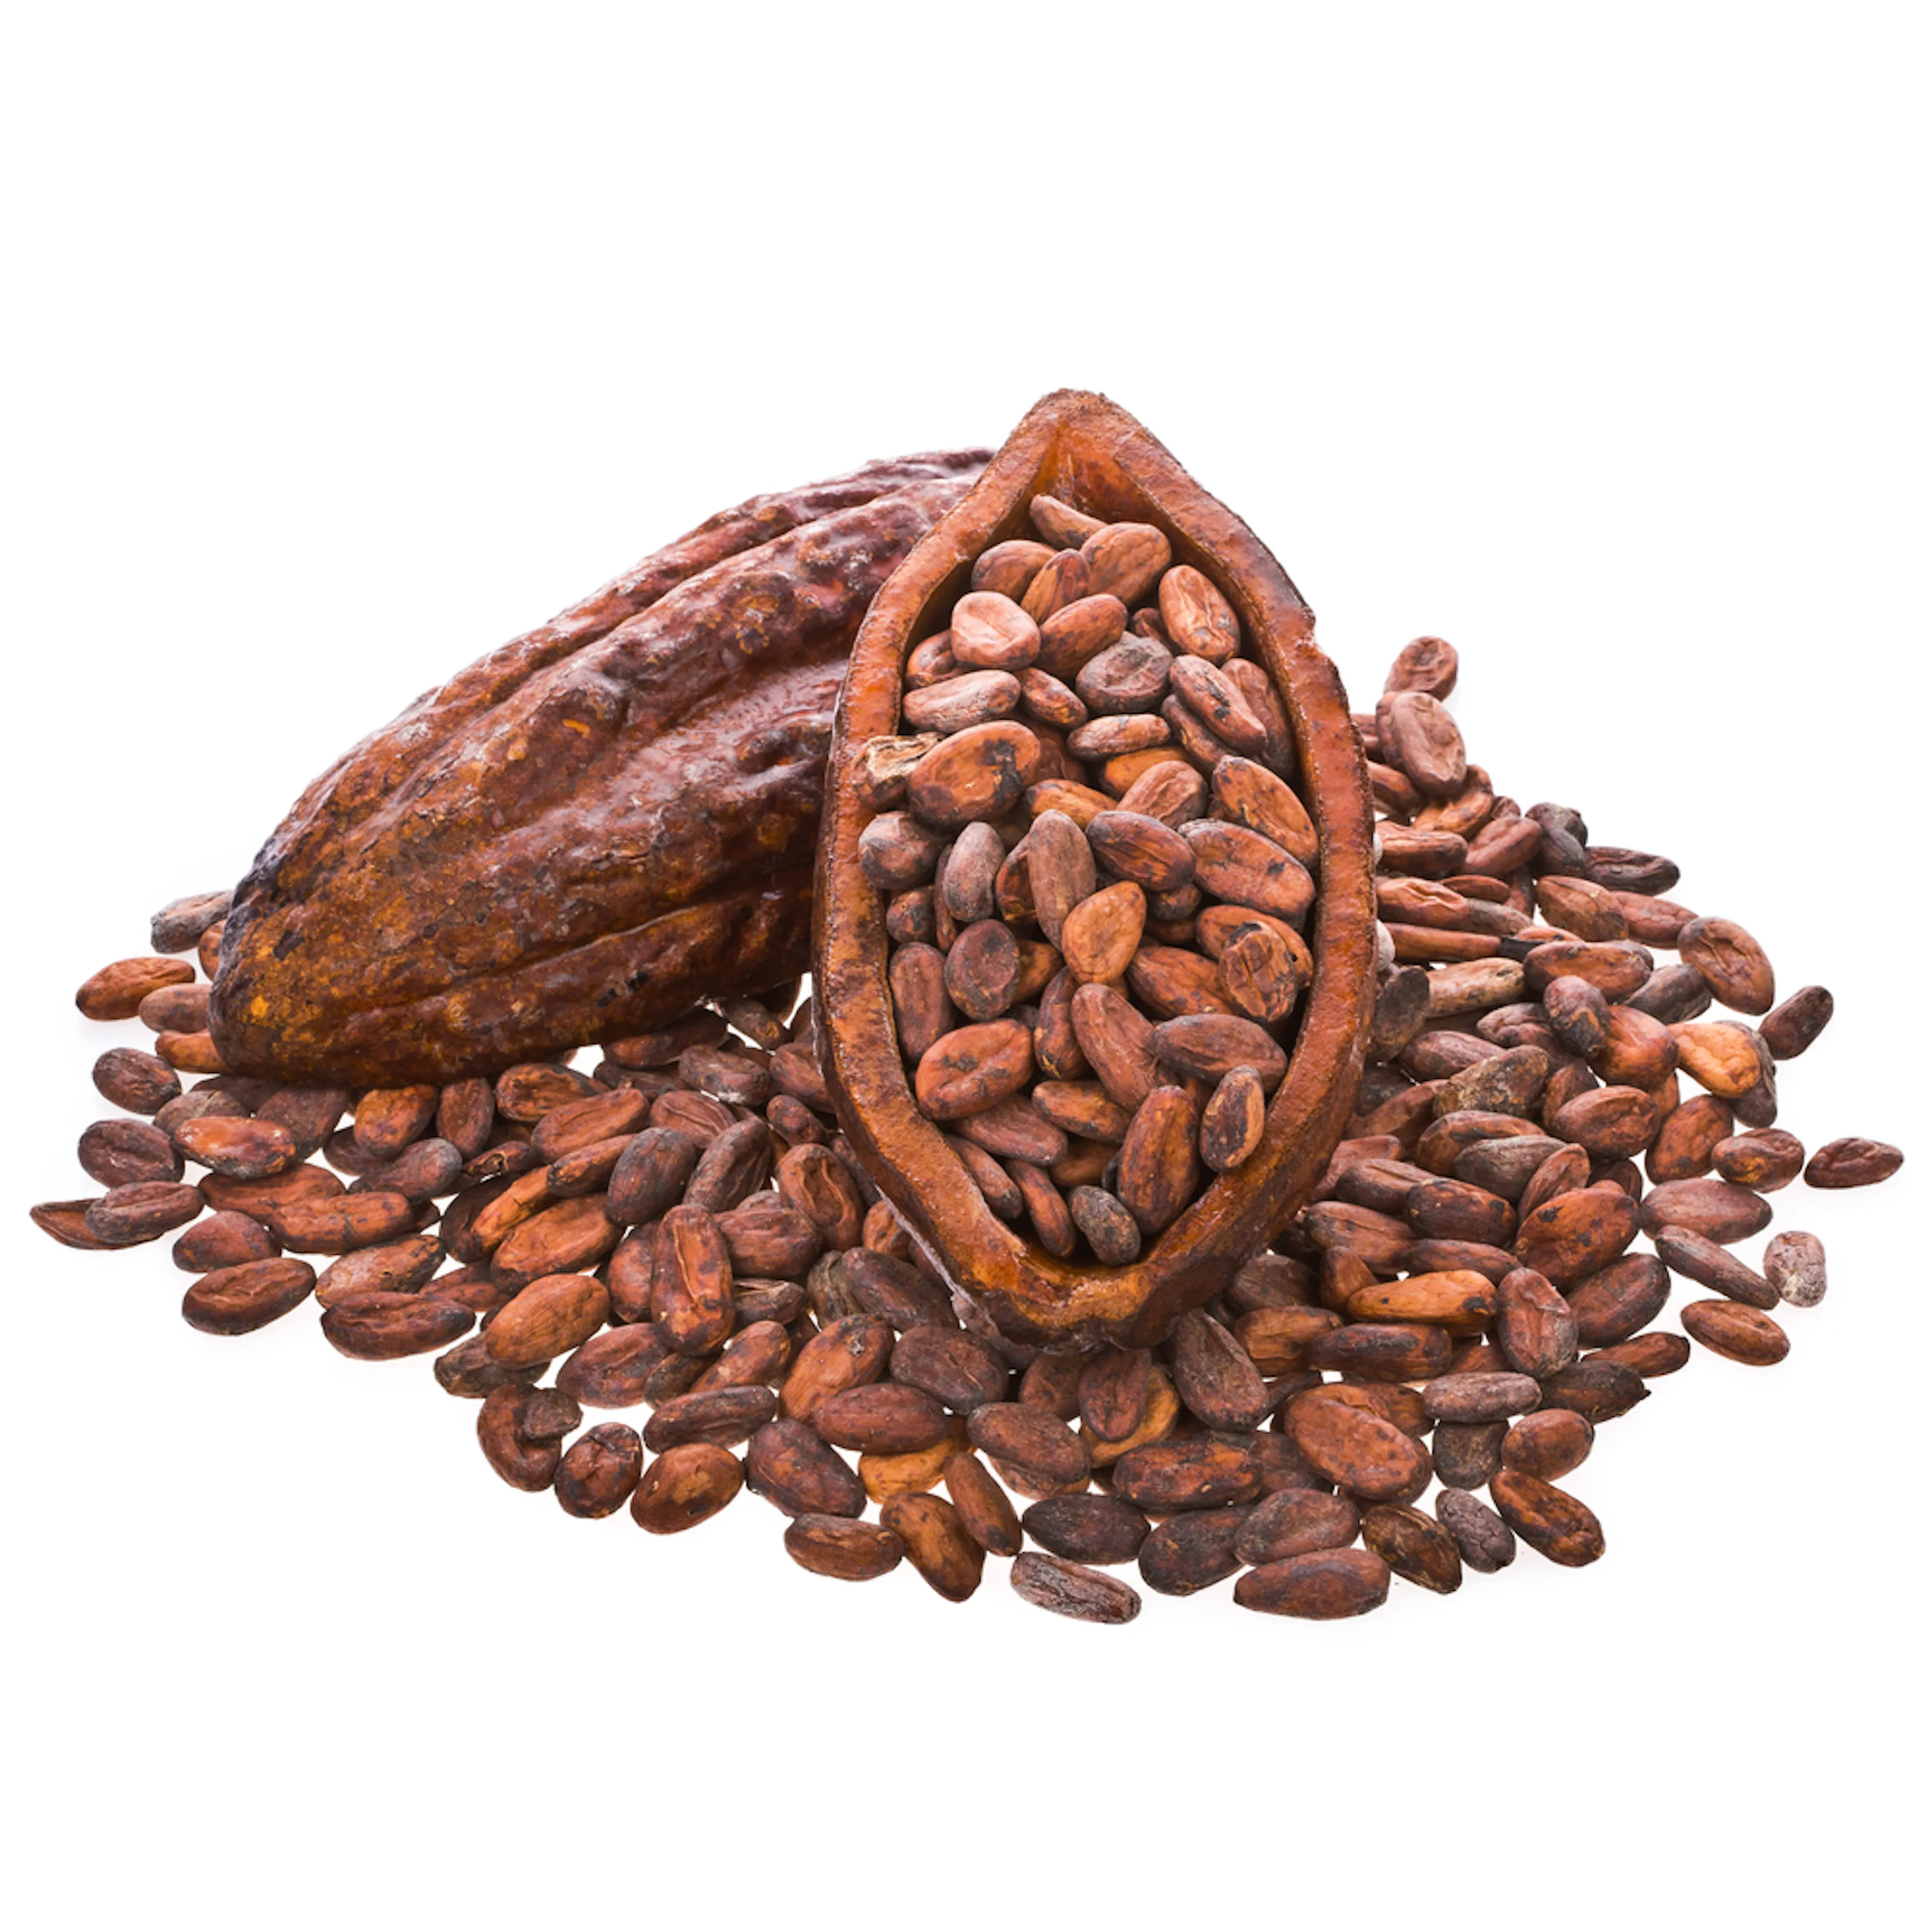 저렴한 가격으로 아라비카 볶은 커피 원두를 구입하십시오.